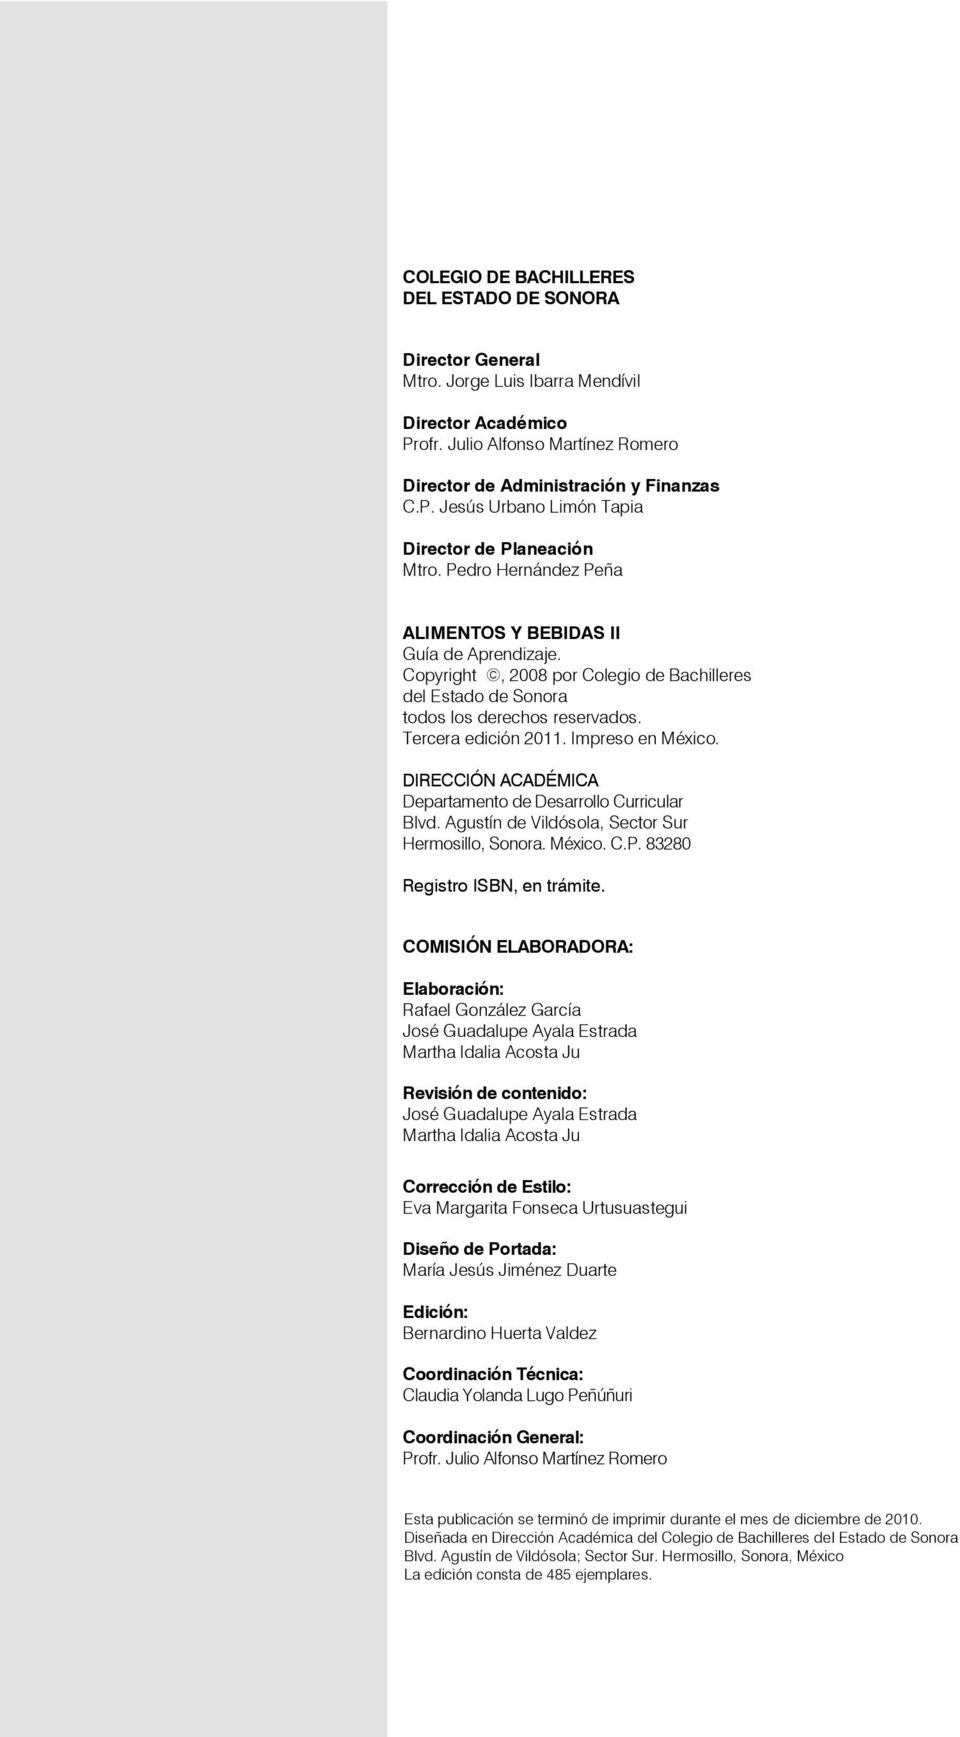 DIRECCIÓN ACADÉMICA Departamento de Desarrollo Curricular Blvd. Agustín de Vildósola, Sector Sur Hermosillo, Sonora. México. C.P. 83280 Registro ISBN, en trámite.